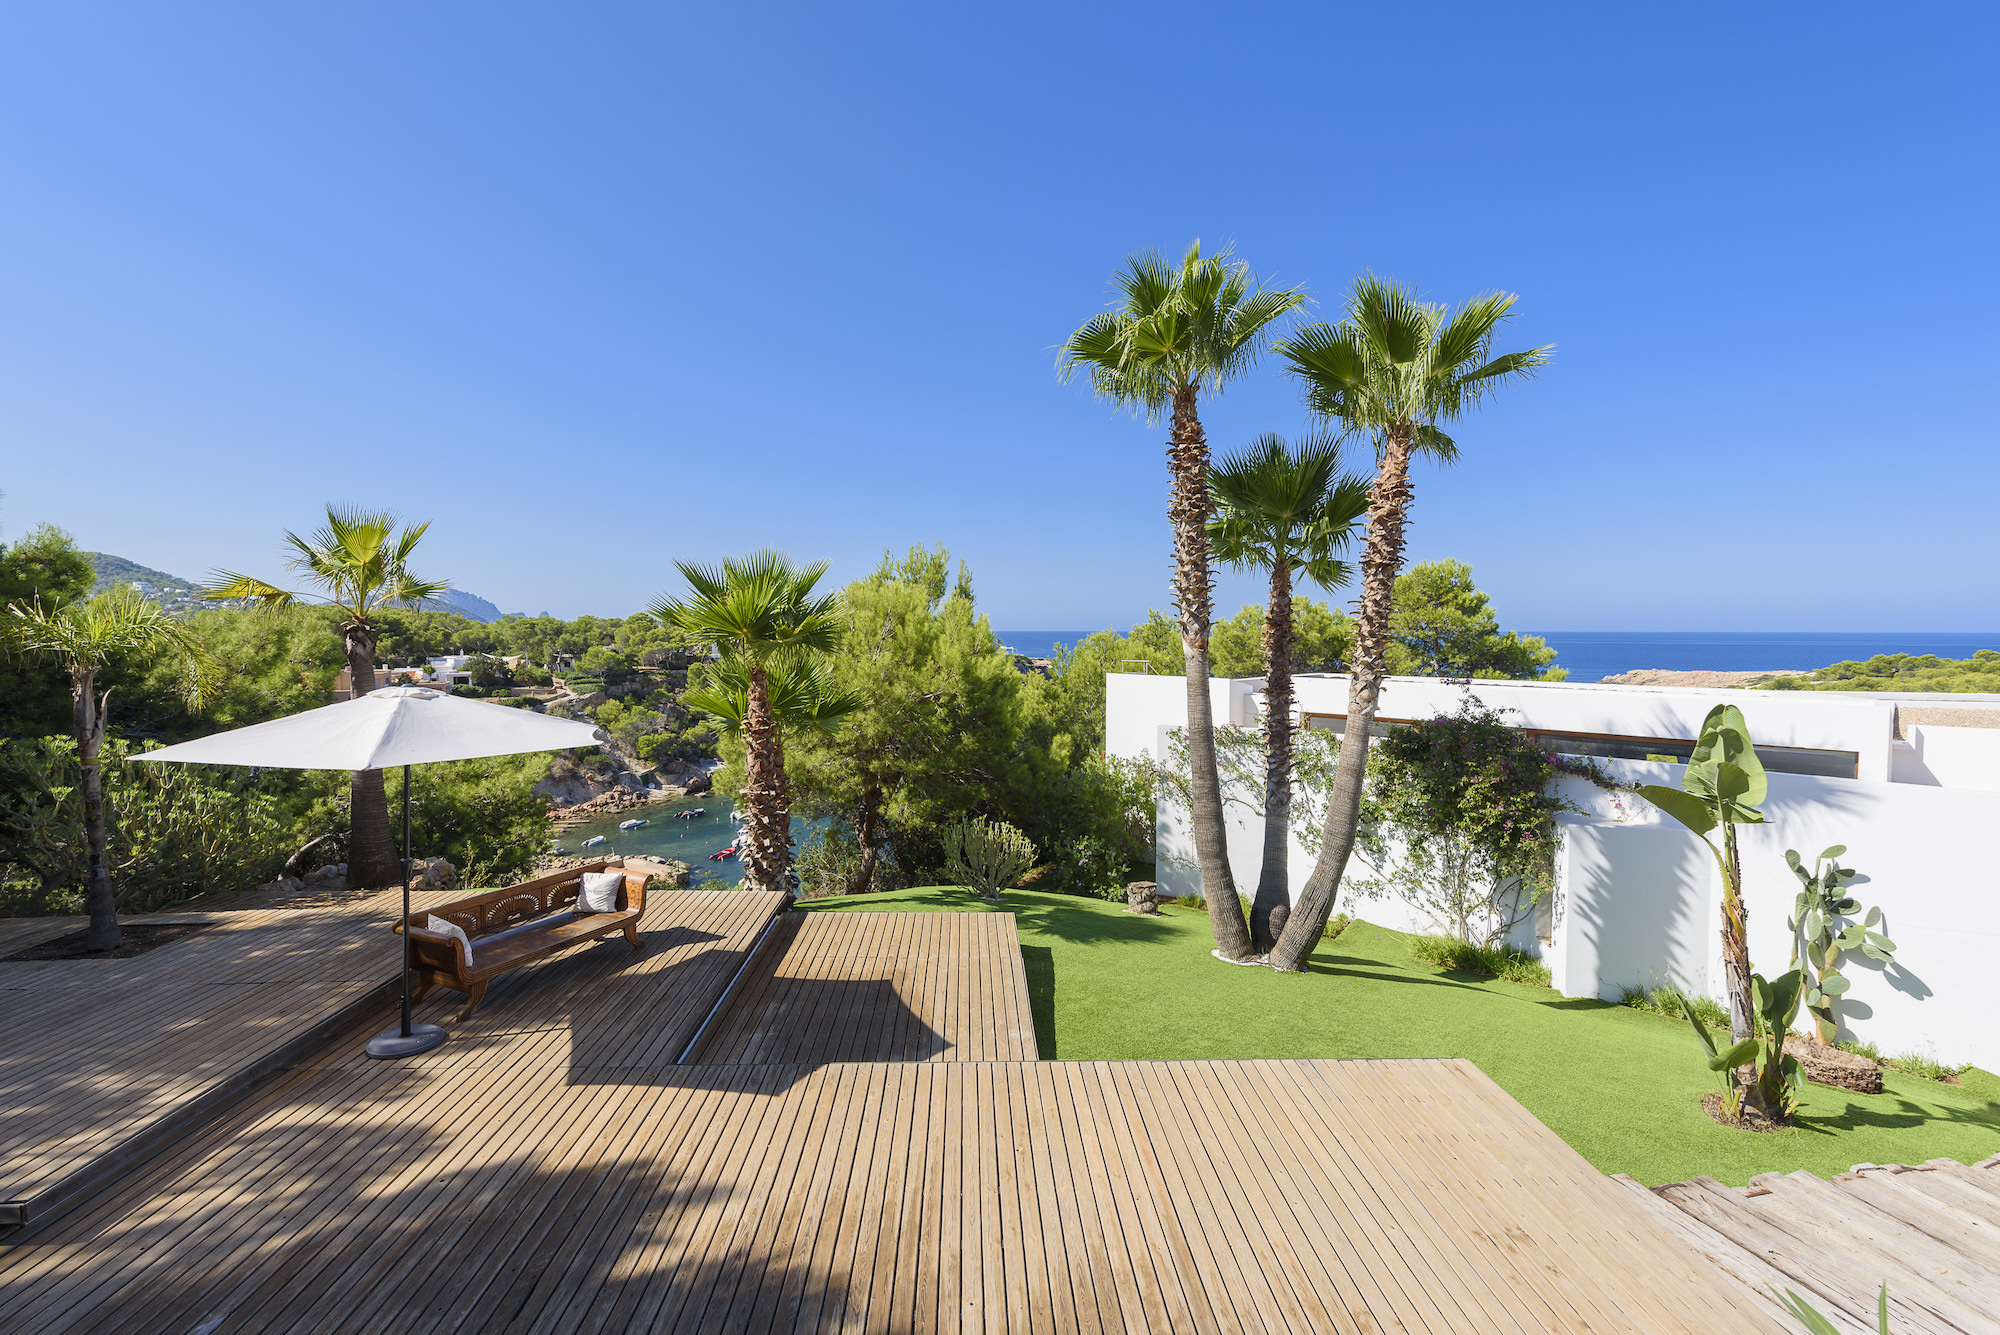 Ibiza Luxury villa rental with concierge